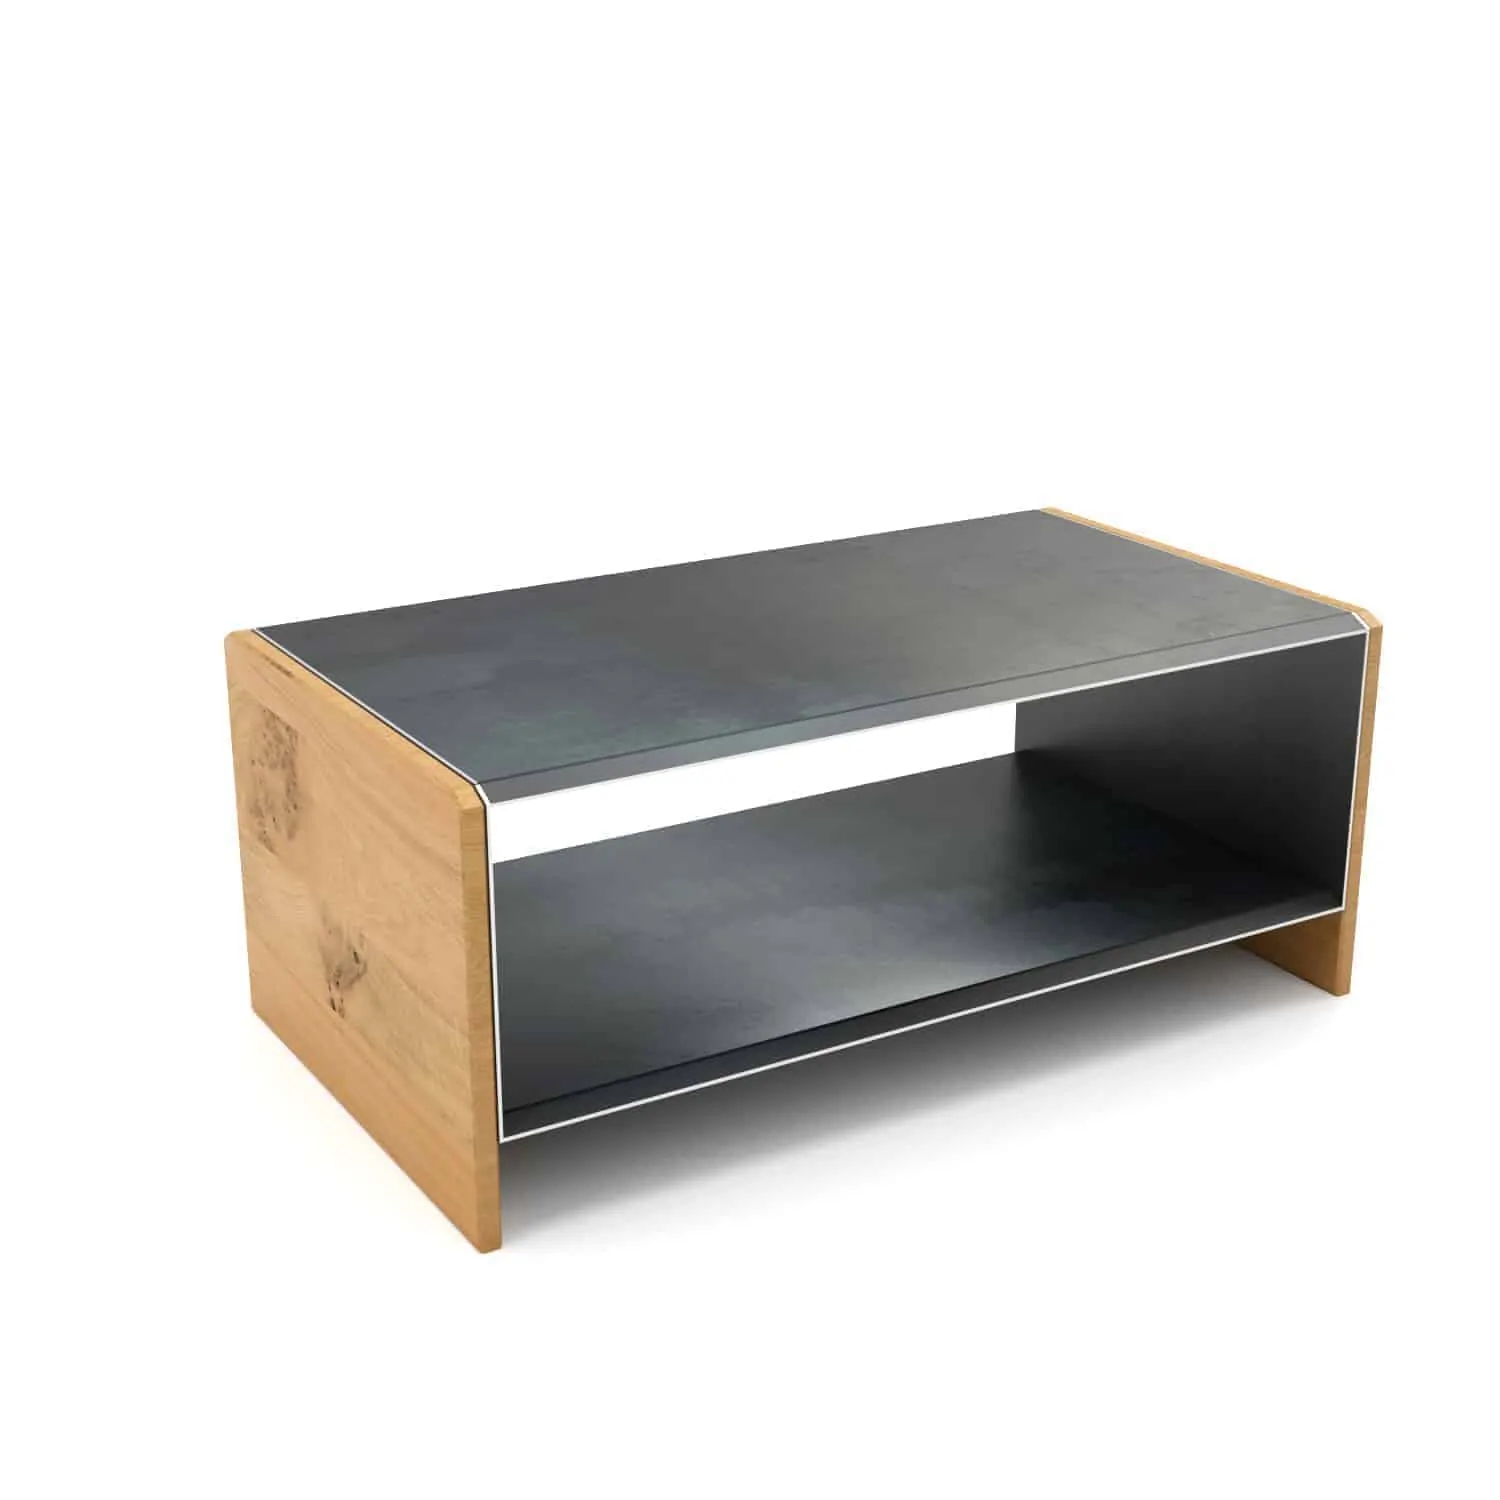 Couchtisch Straight Schwarz Grau Holz Metall Design Mobel Online Shop